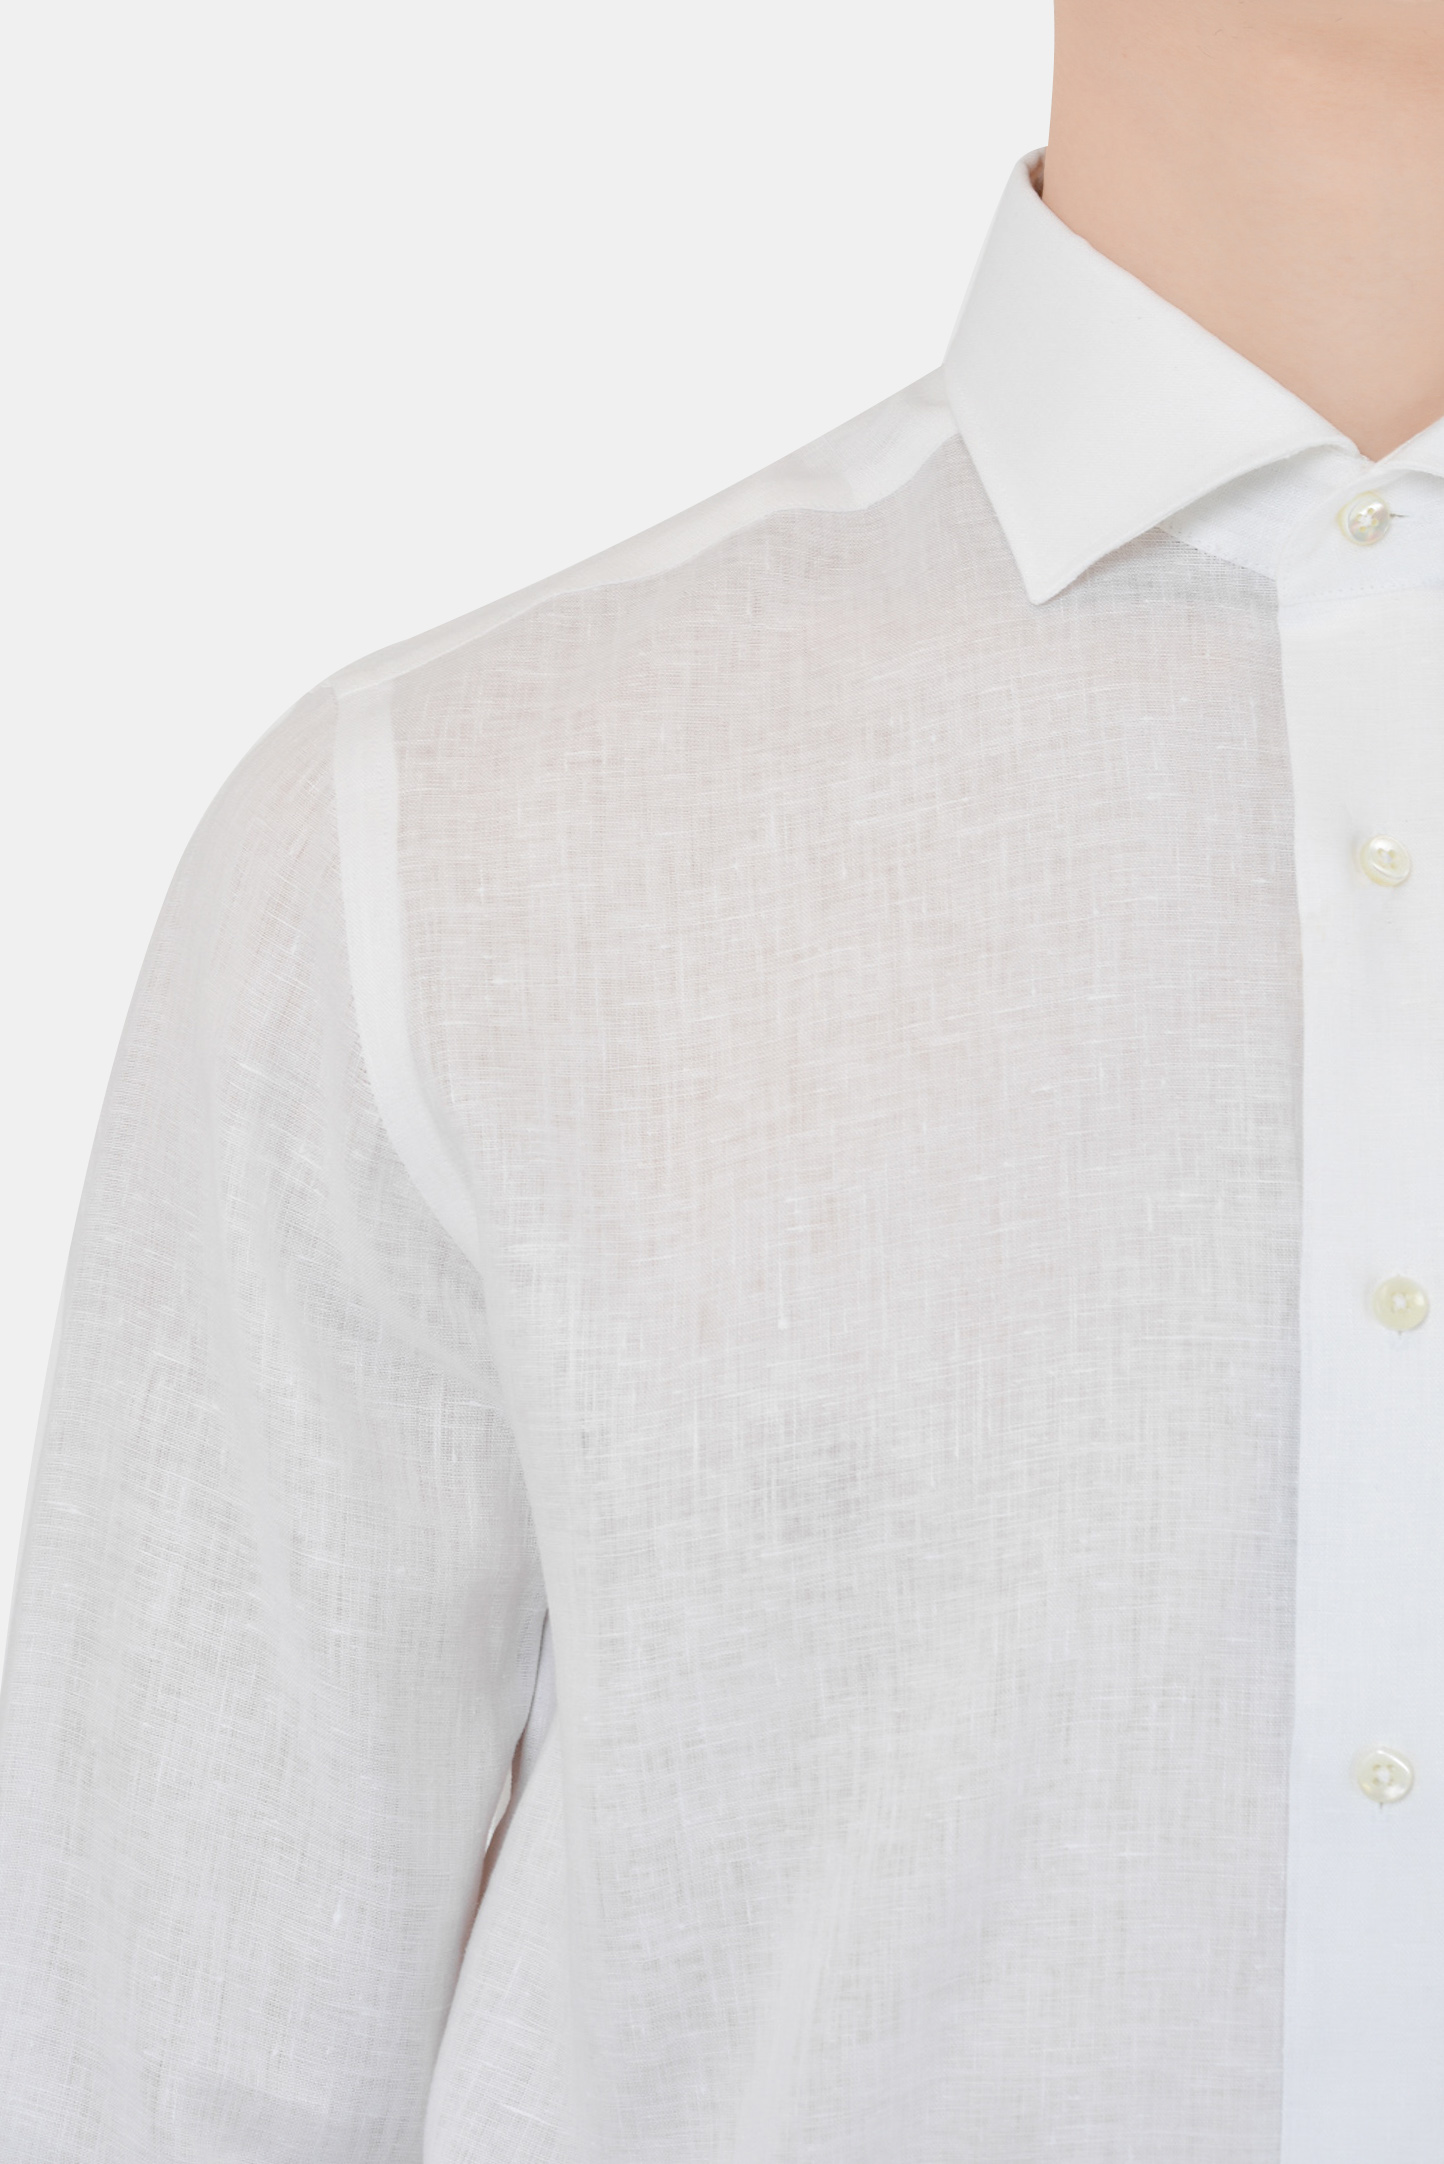 Рубашка CANALI GR01840/001, цвет: Белый, Мужской